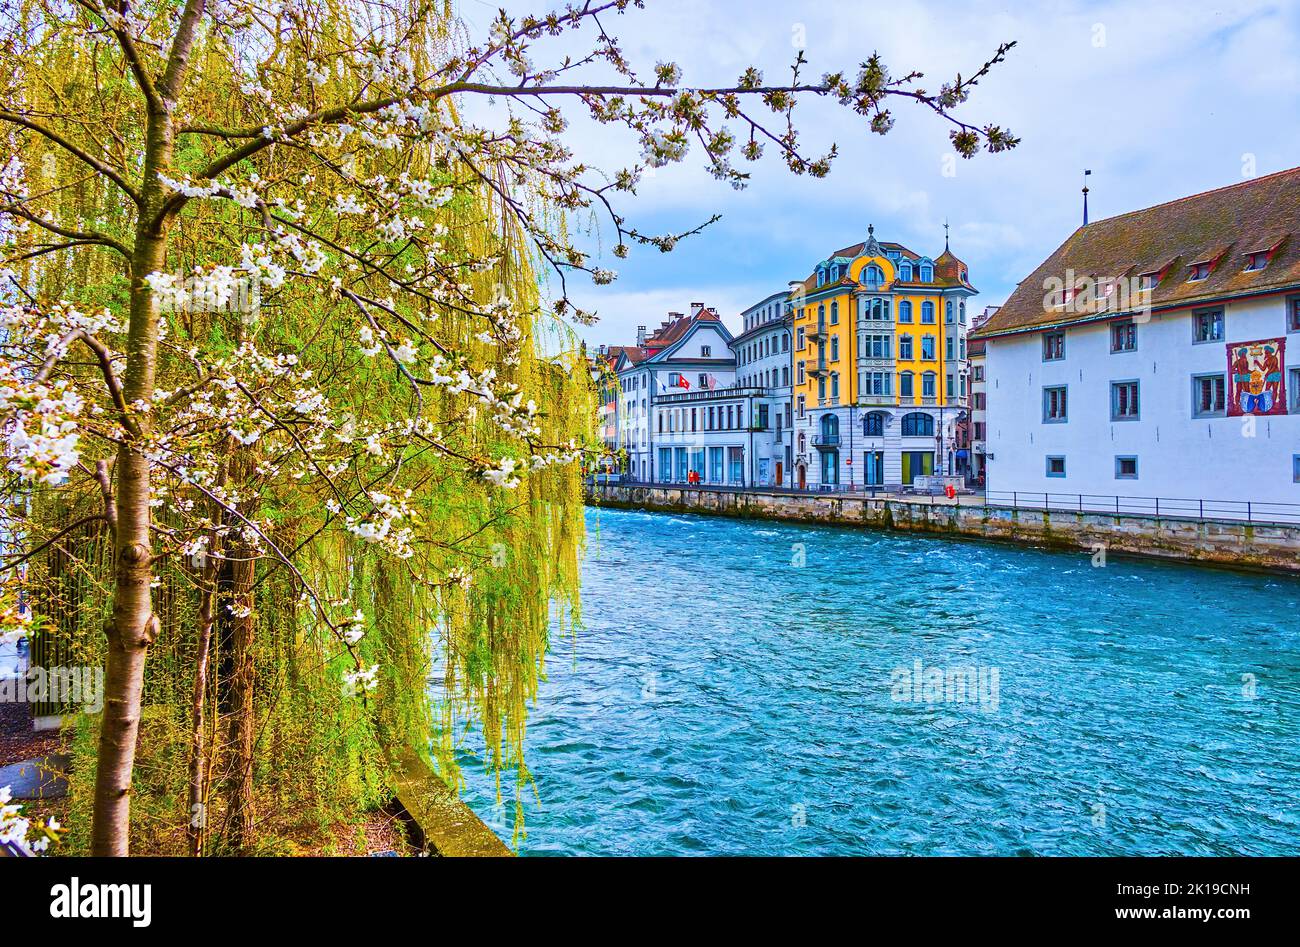 Albero di ciliegio in fiore con fiori bianchi sulla riva del fiume Reuss vicino alla diga dell'ago a Lucerna, in Svizzera Foto Stock